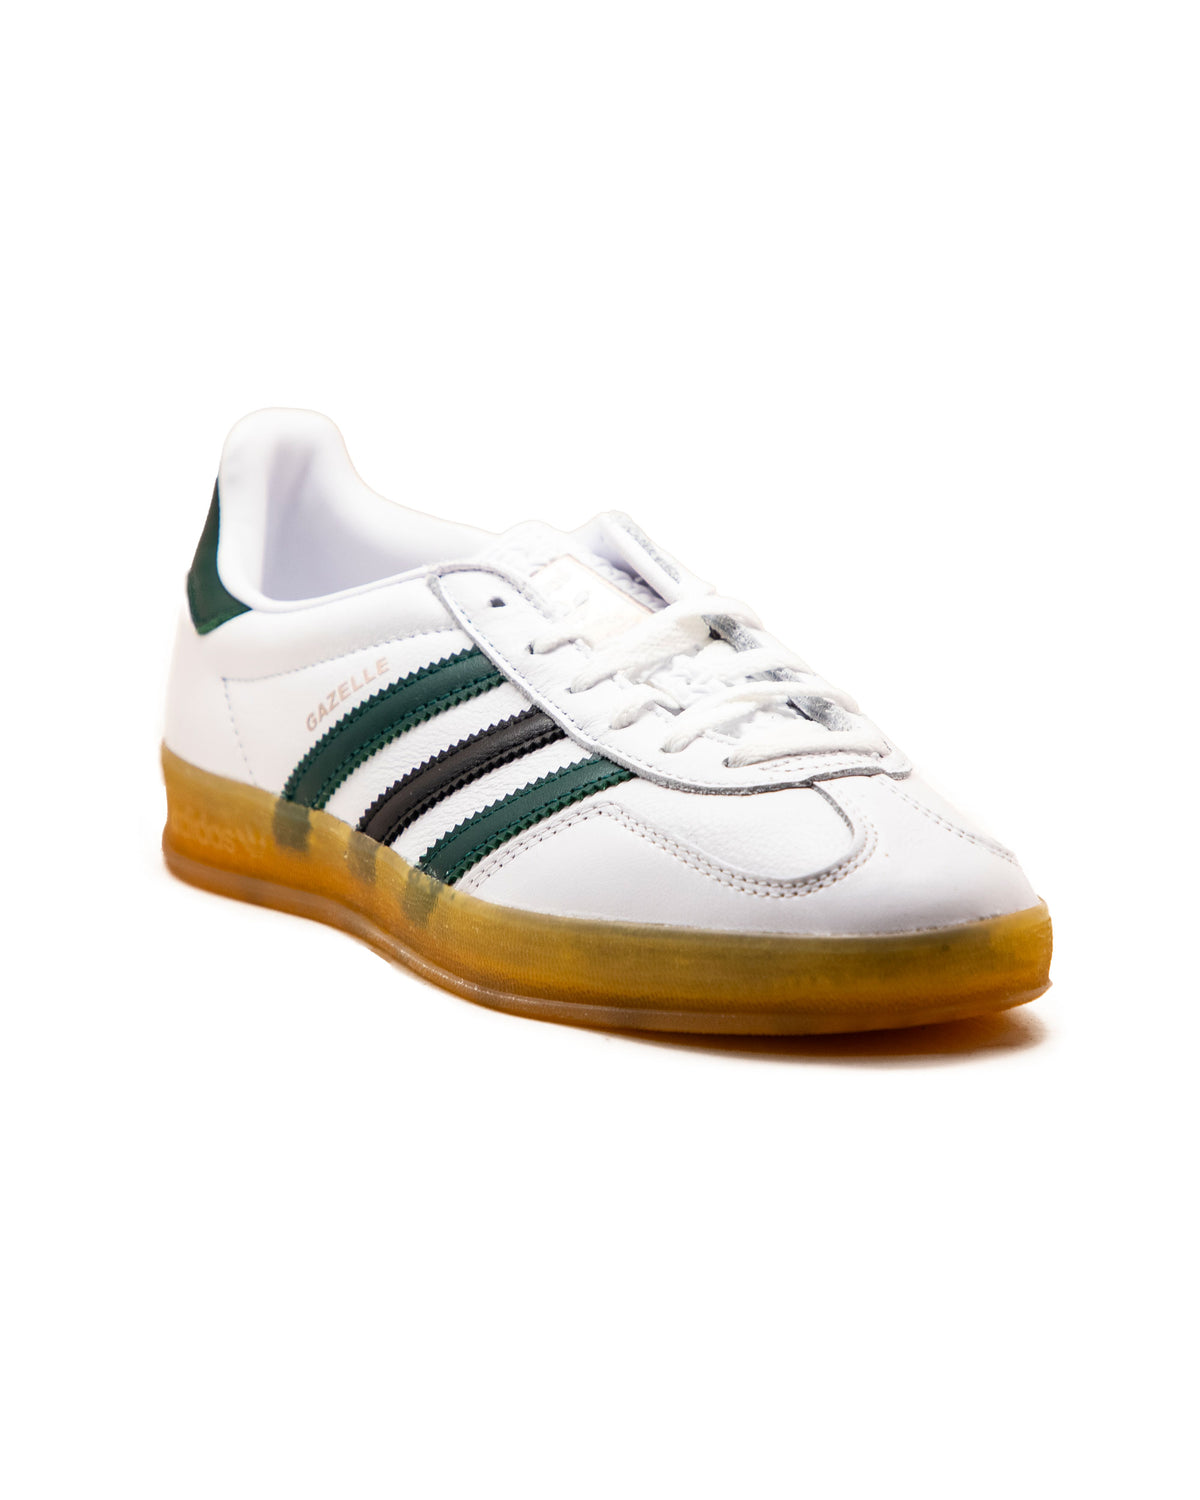 Adidas Gazelle Indoor W White Green